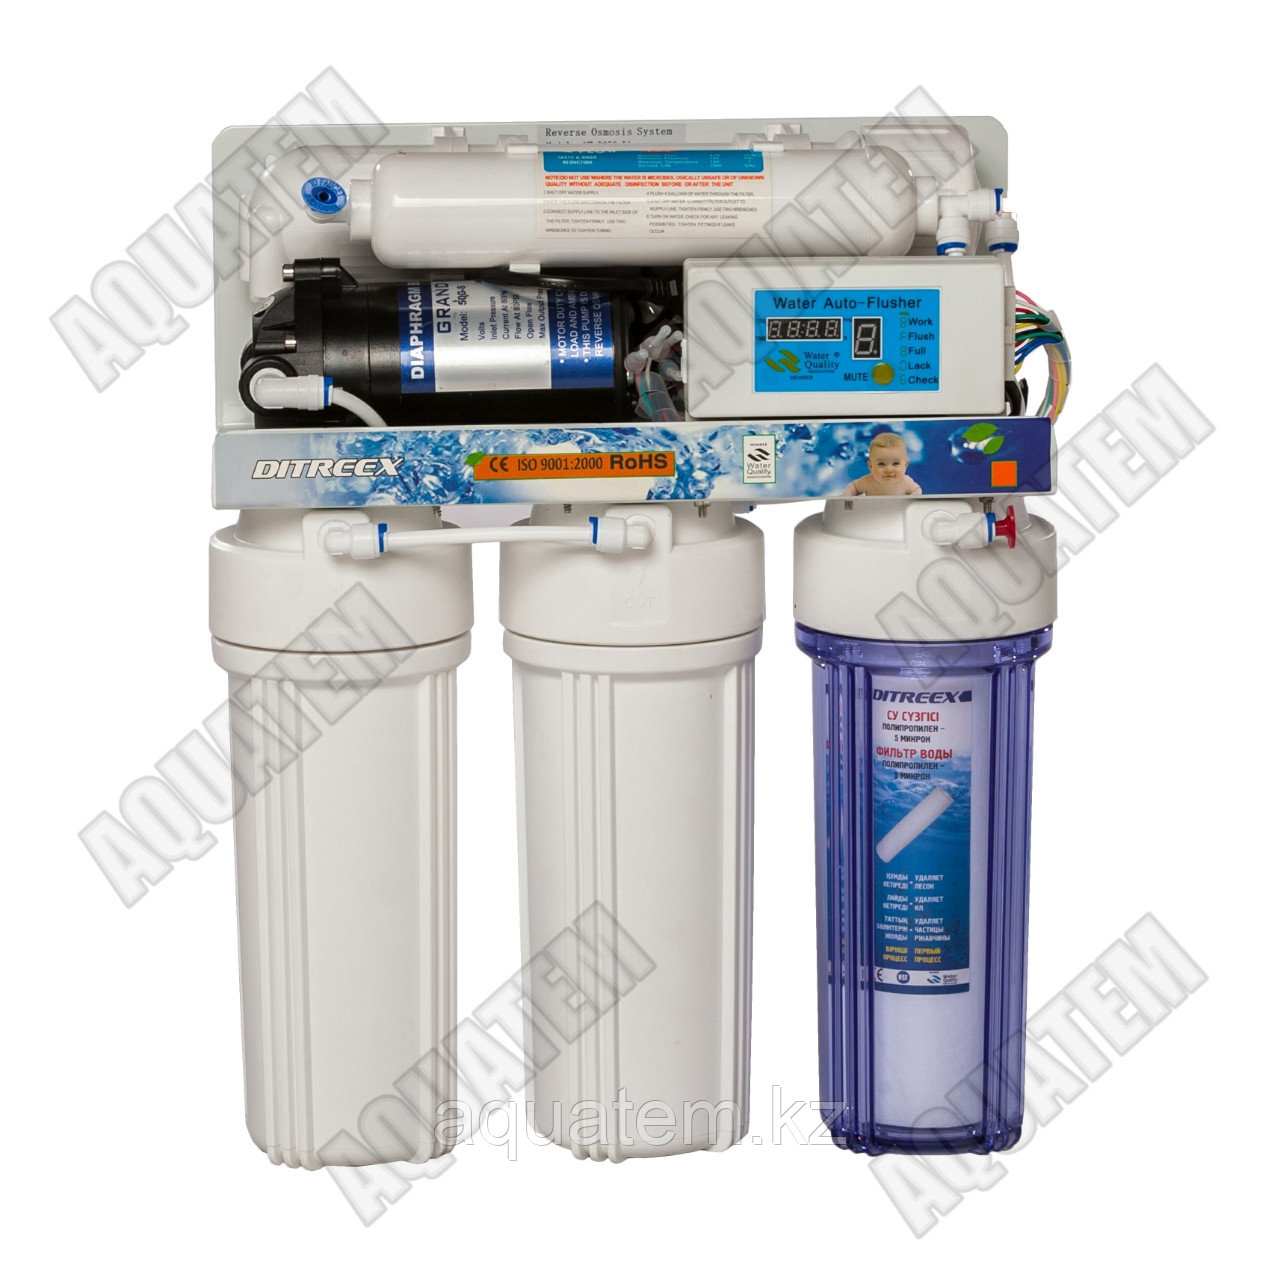 Фильтр для воды Ditreex RO50D1